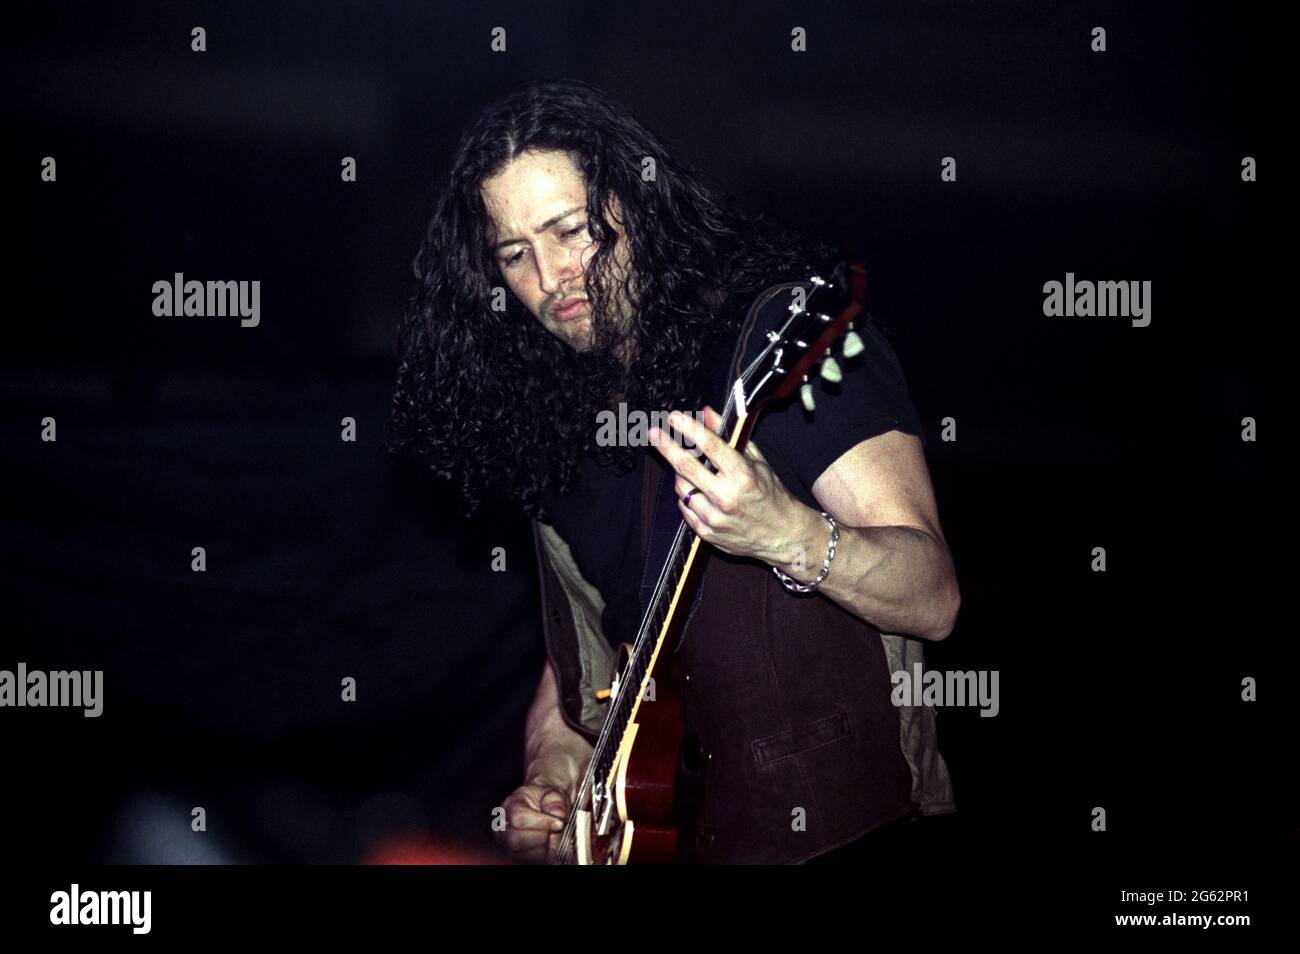 Milano Italiy 03/03/1995 : il chitarrista del Queensryche Michael Wilton durante il concerto dal vivo al Palalido Foto Stock